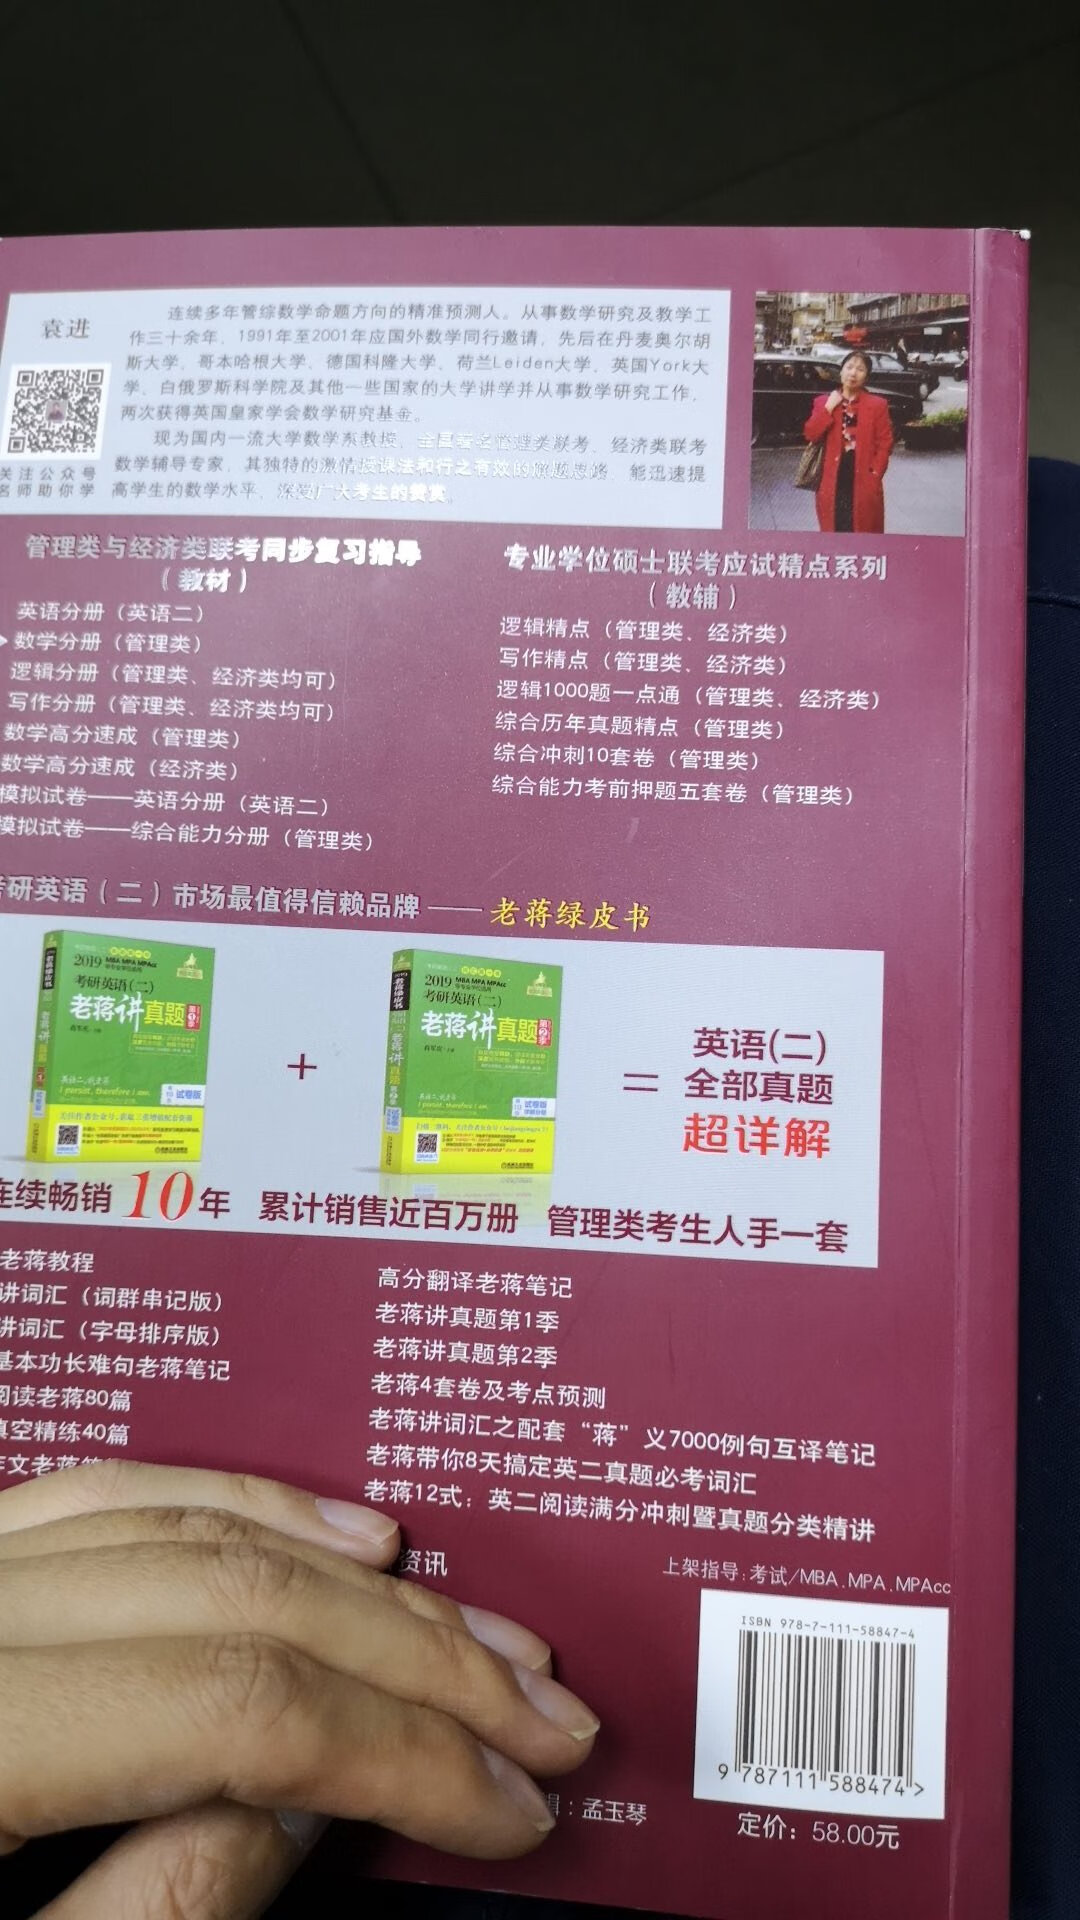 还可以，挺全面的，这个数学书用起来还挺顺手的，的快递一直很快，在北京都是当天或次日就到了。看起来进度也很快。